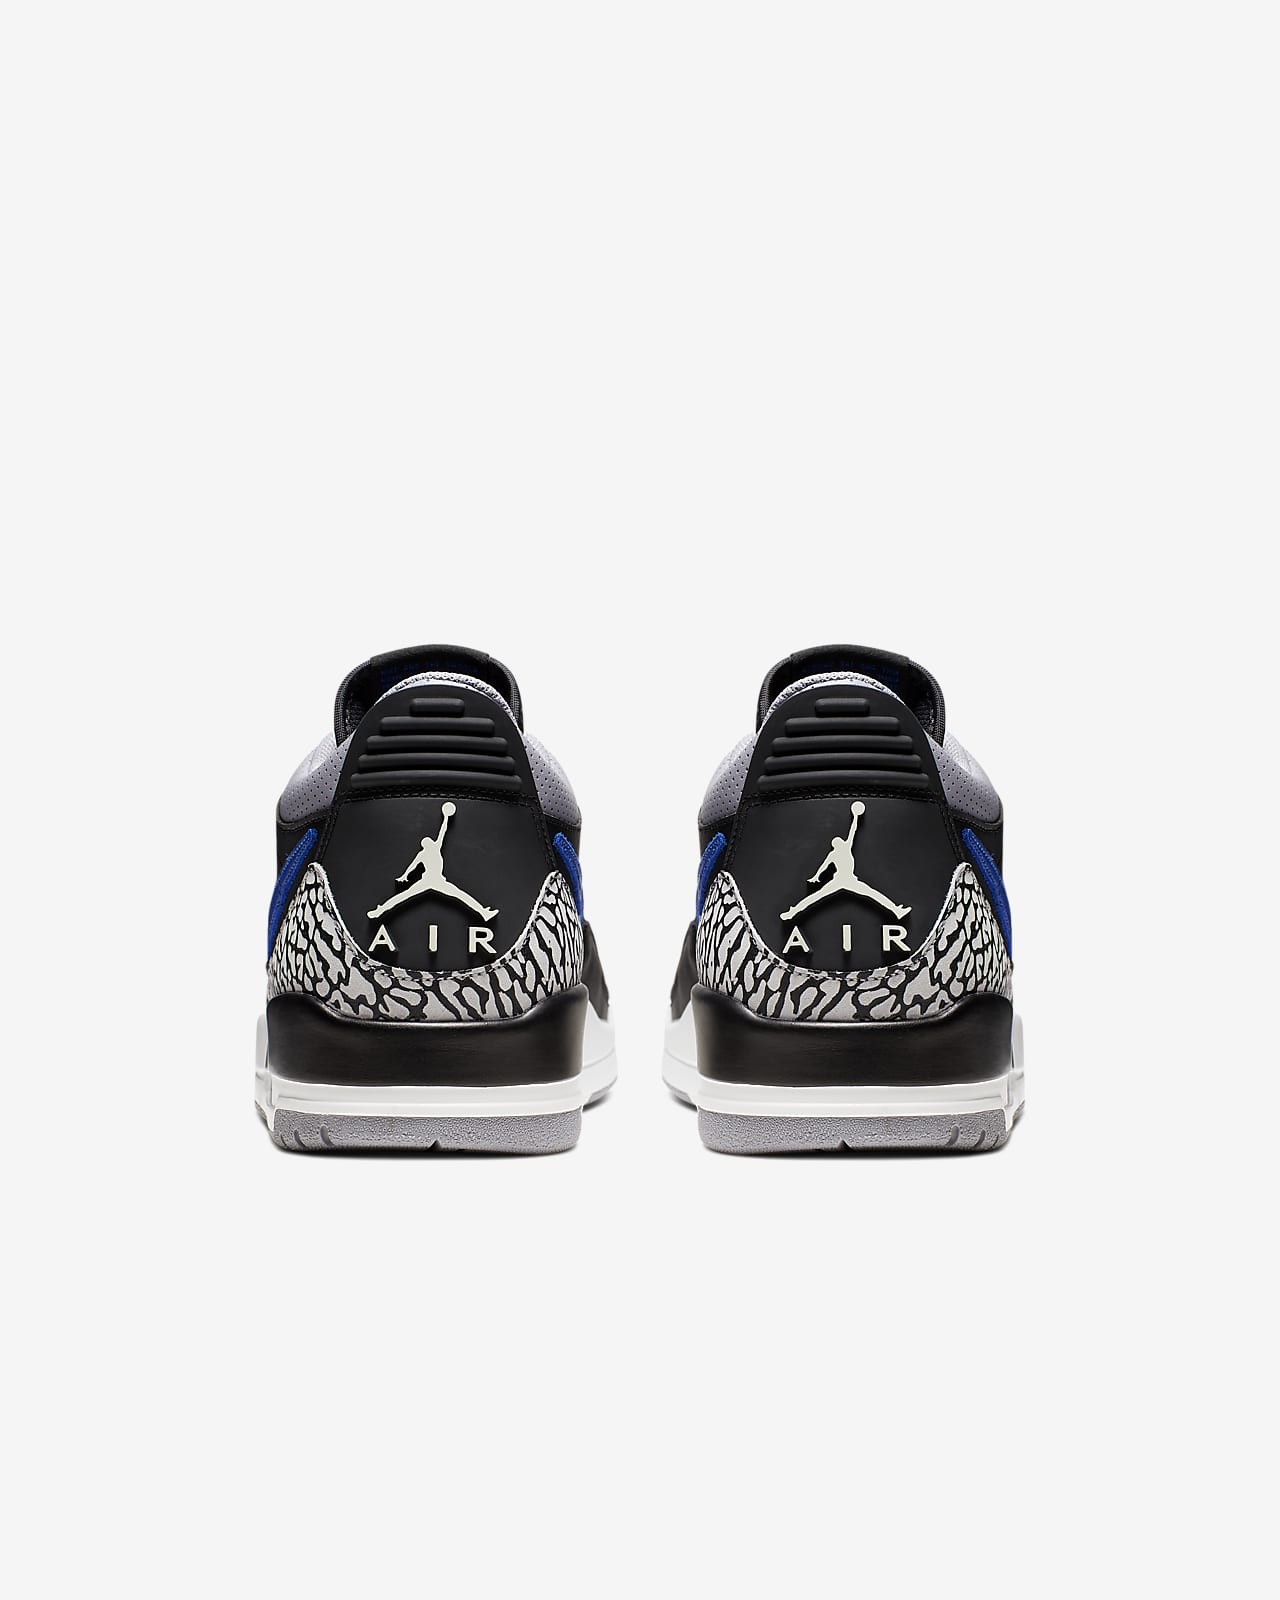 Air Jordan Legacy 312 Low Men S Shoe Nike Ph